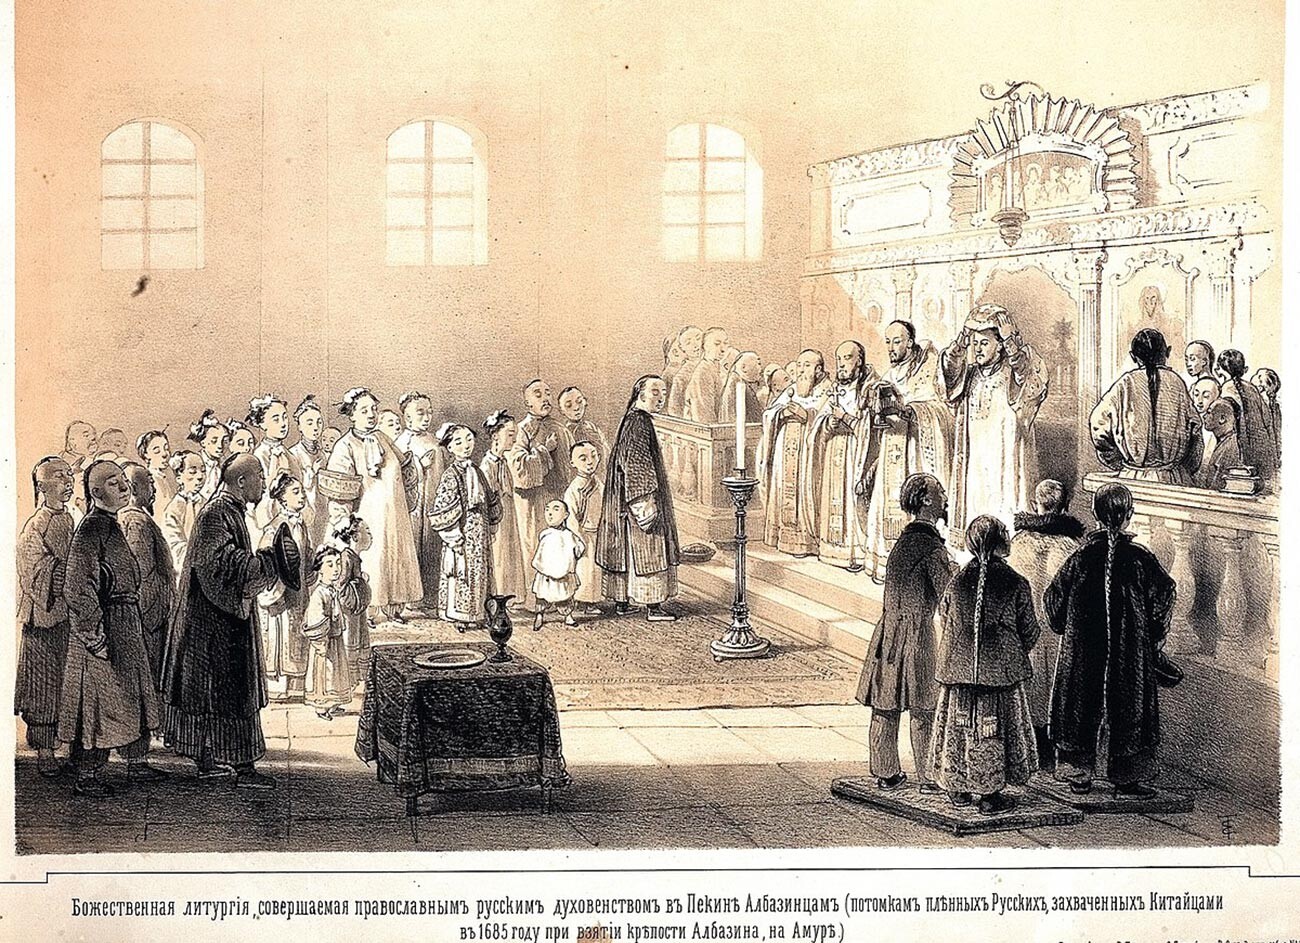 Liturgie pour les descendants de cosaques russes au sein de la Mission spirituelle russe à Pékin